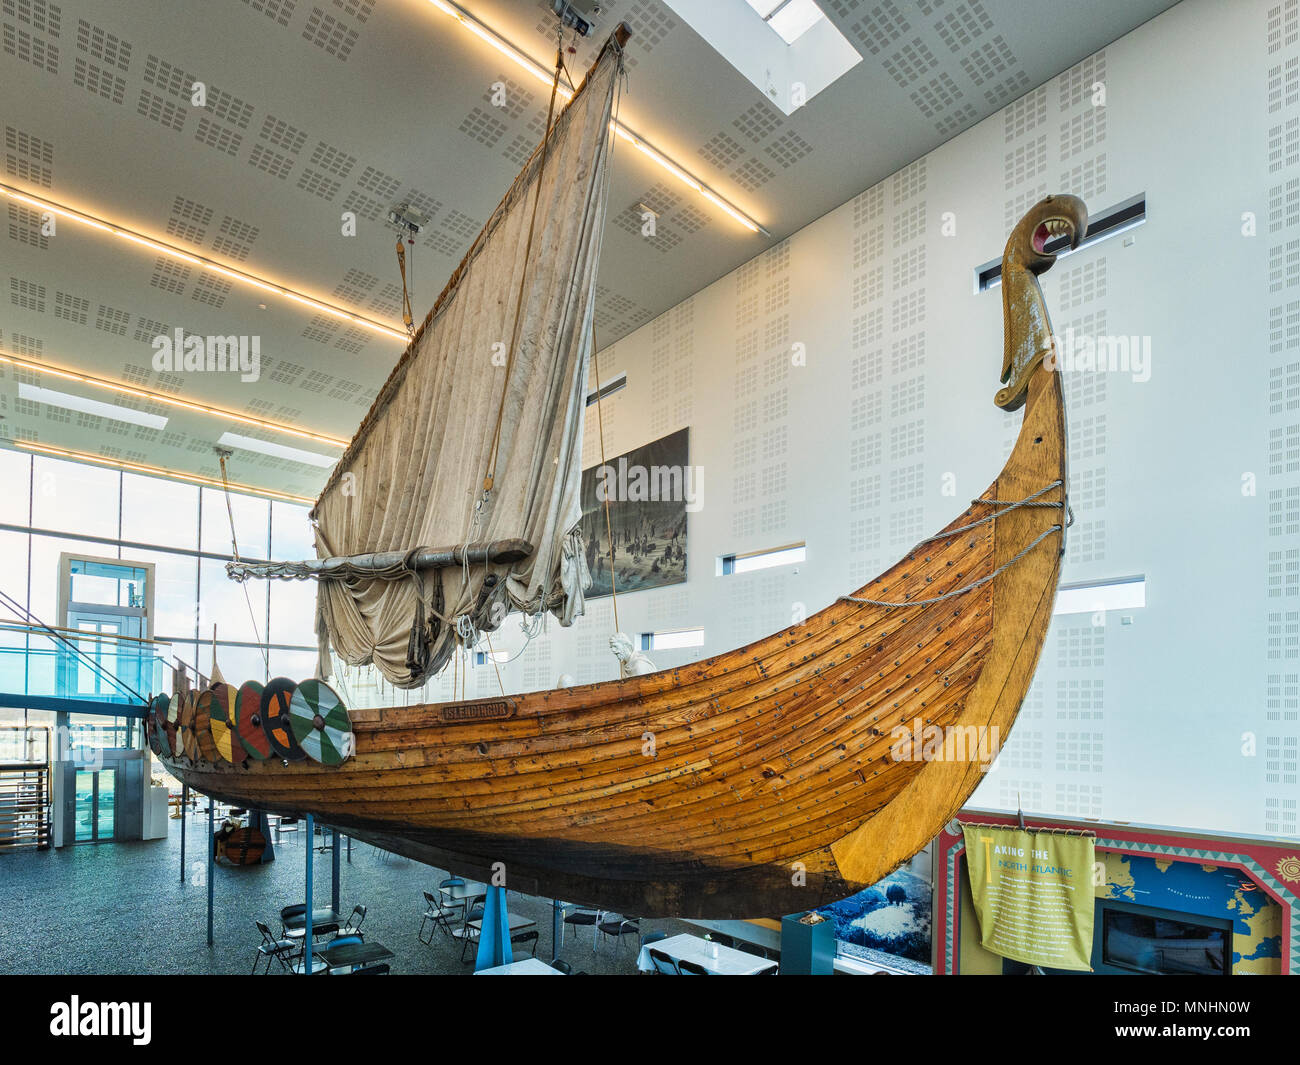 18 avril 2018 : Keflavik, Islande - l'Islendingur, une réplique de la Viking Gokstad ship, à Vikingaheimar, un musée Viking dans la péninsule de Reykjanes Banque D'Images